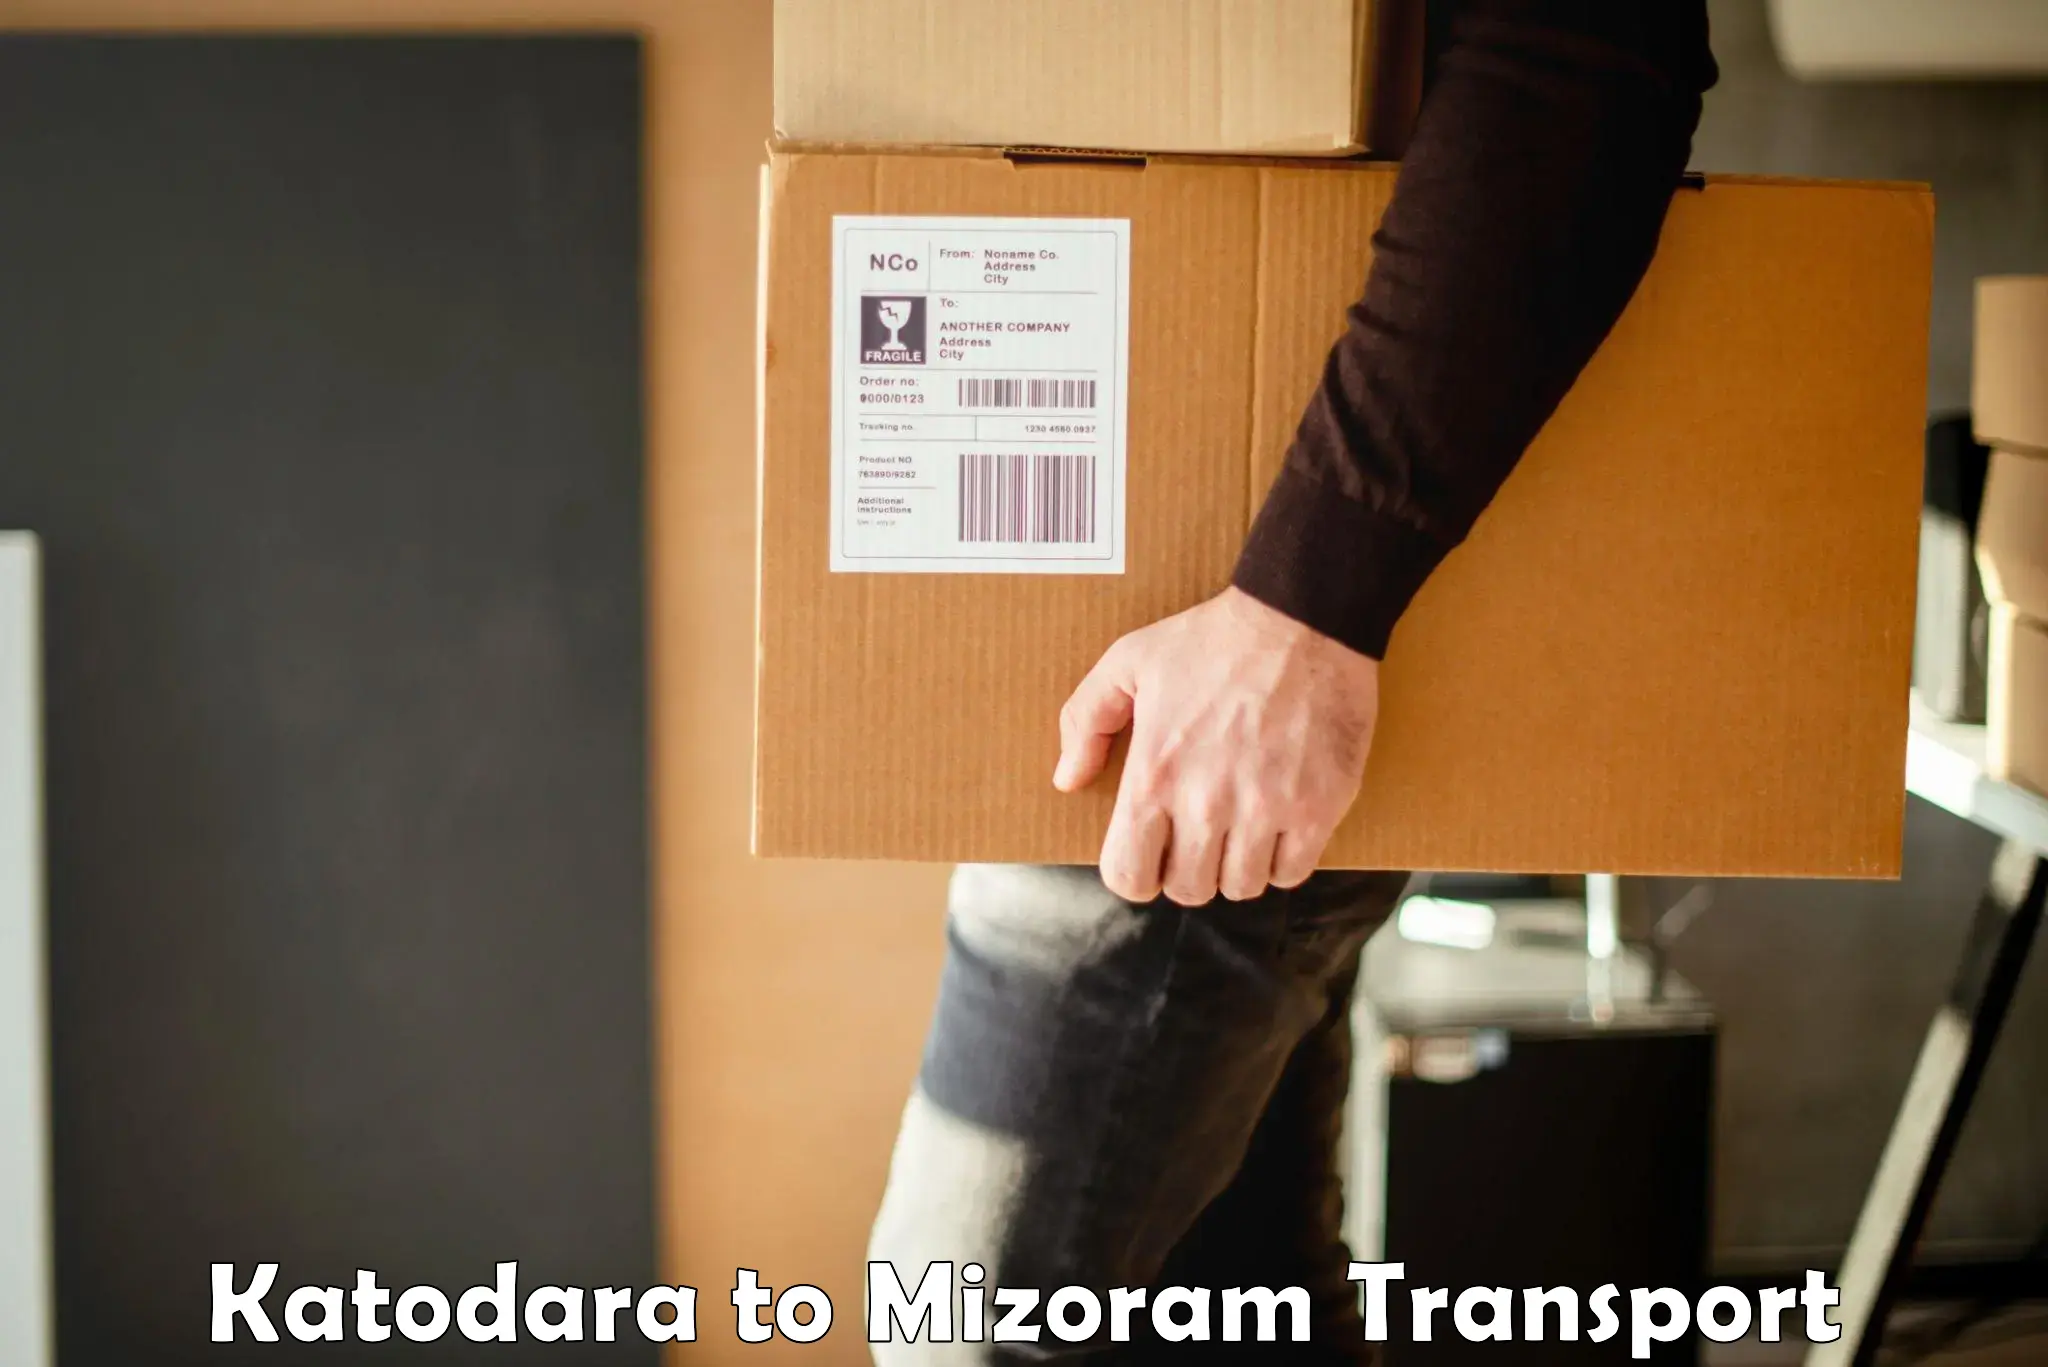 Transport in sharing Katodara to Mizoram